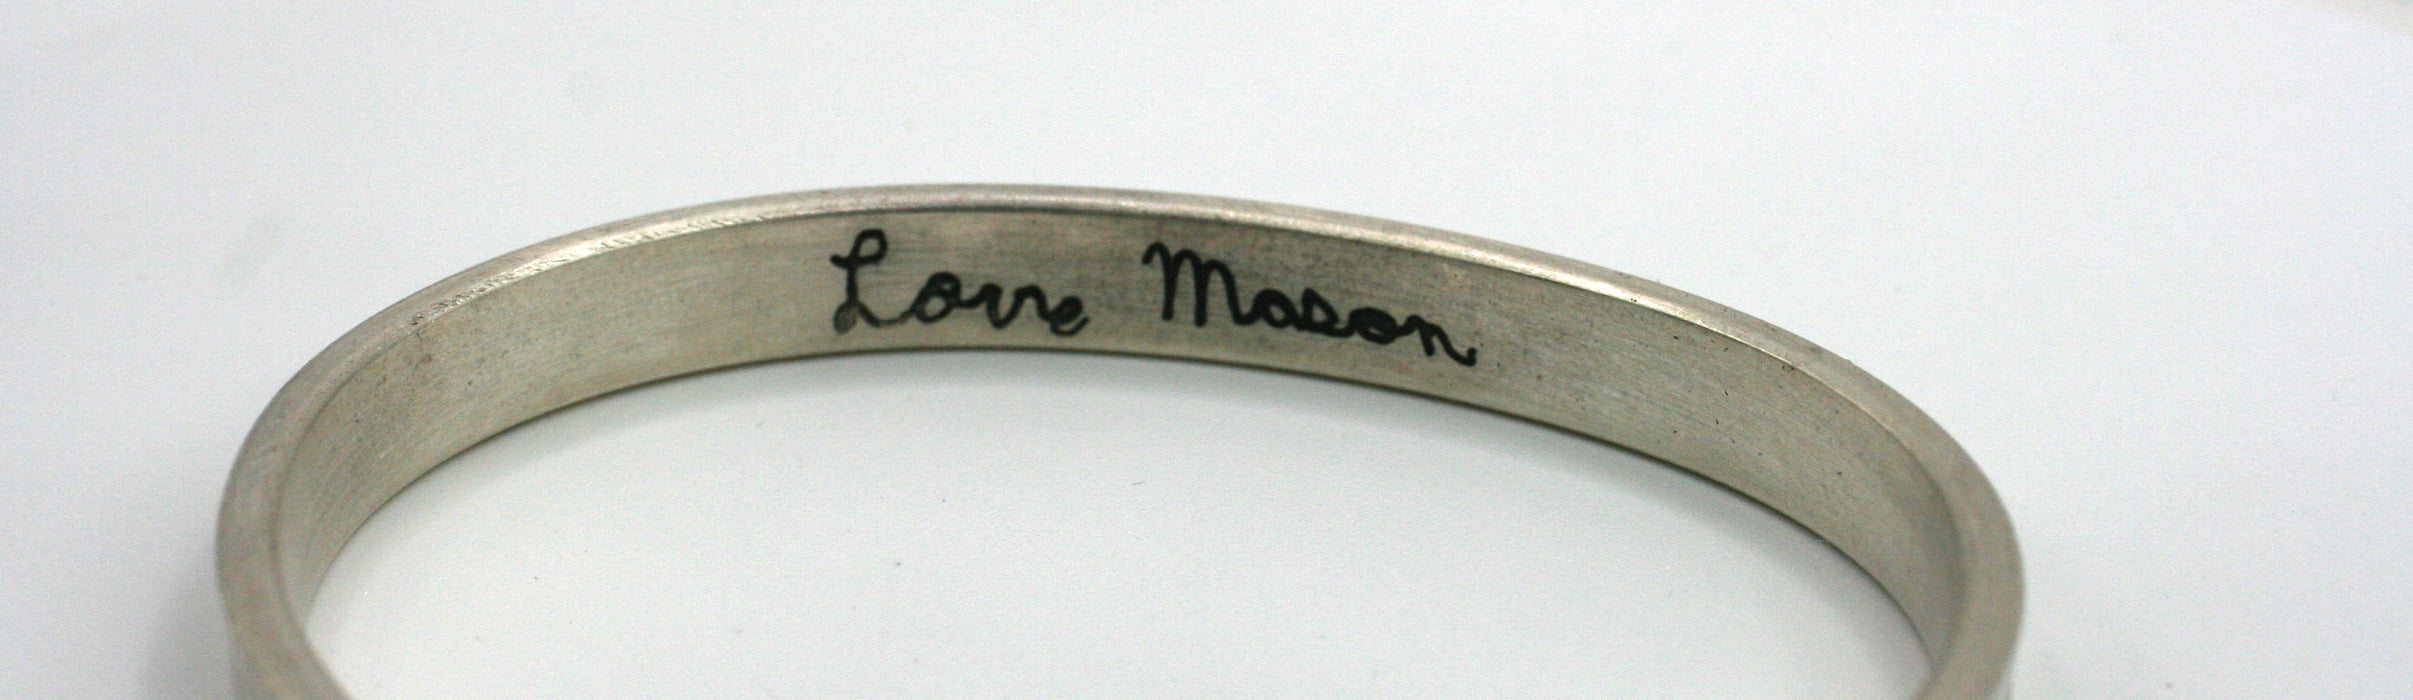 Handwritten Personalized Cuff Bracelet